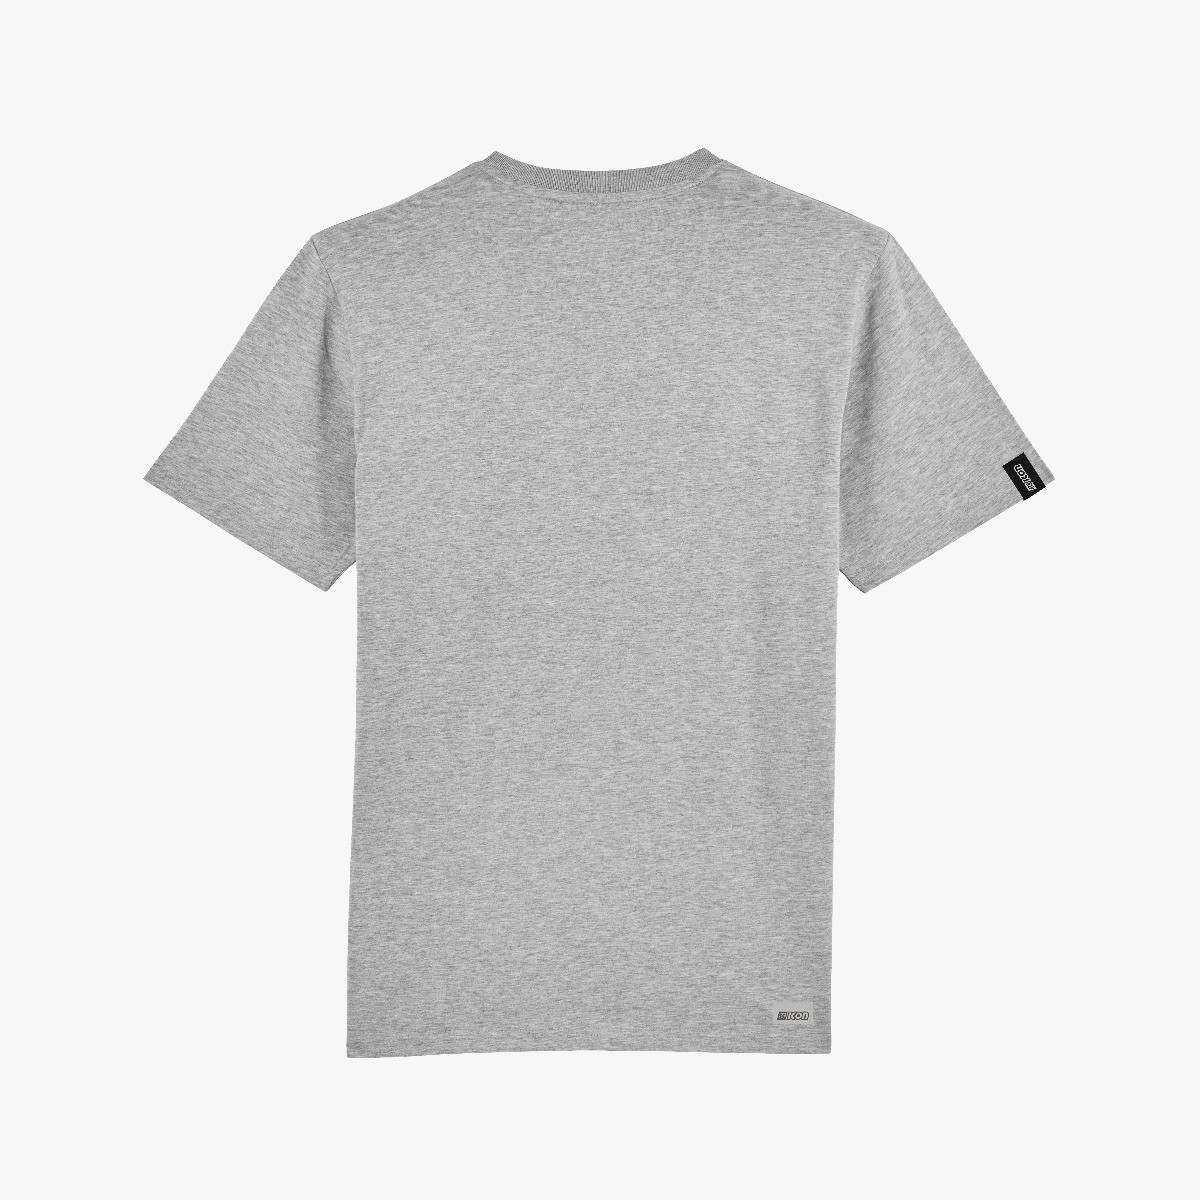 Scicon Sports | Lifestyle Cotton Scicon 80 T-shirt - grey - TS61894
